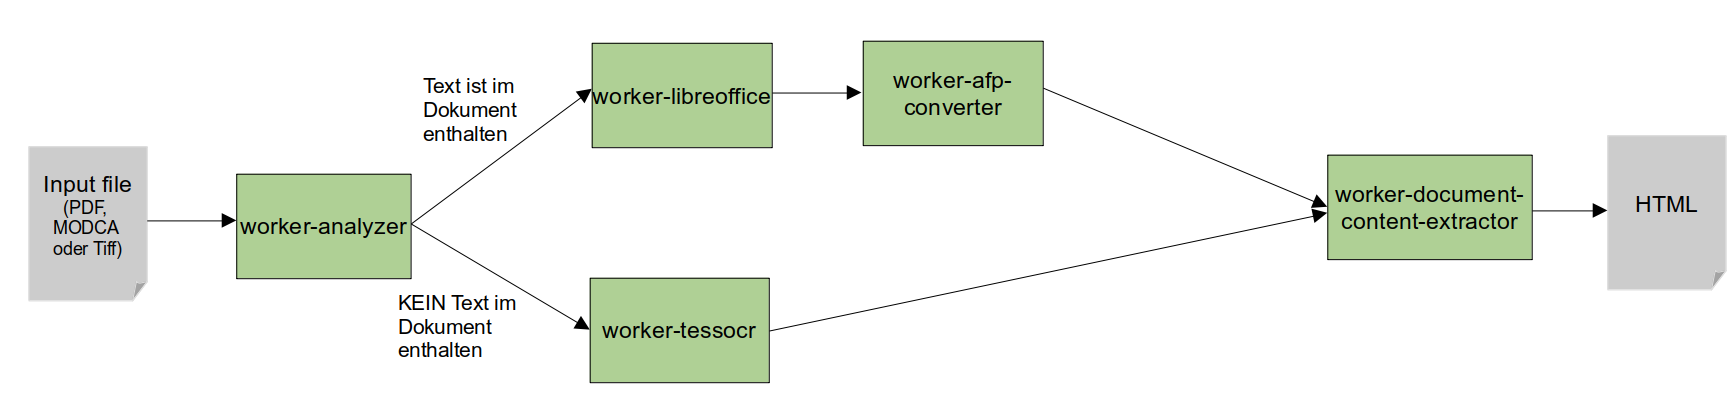 Document Enhancer Workflow